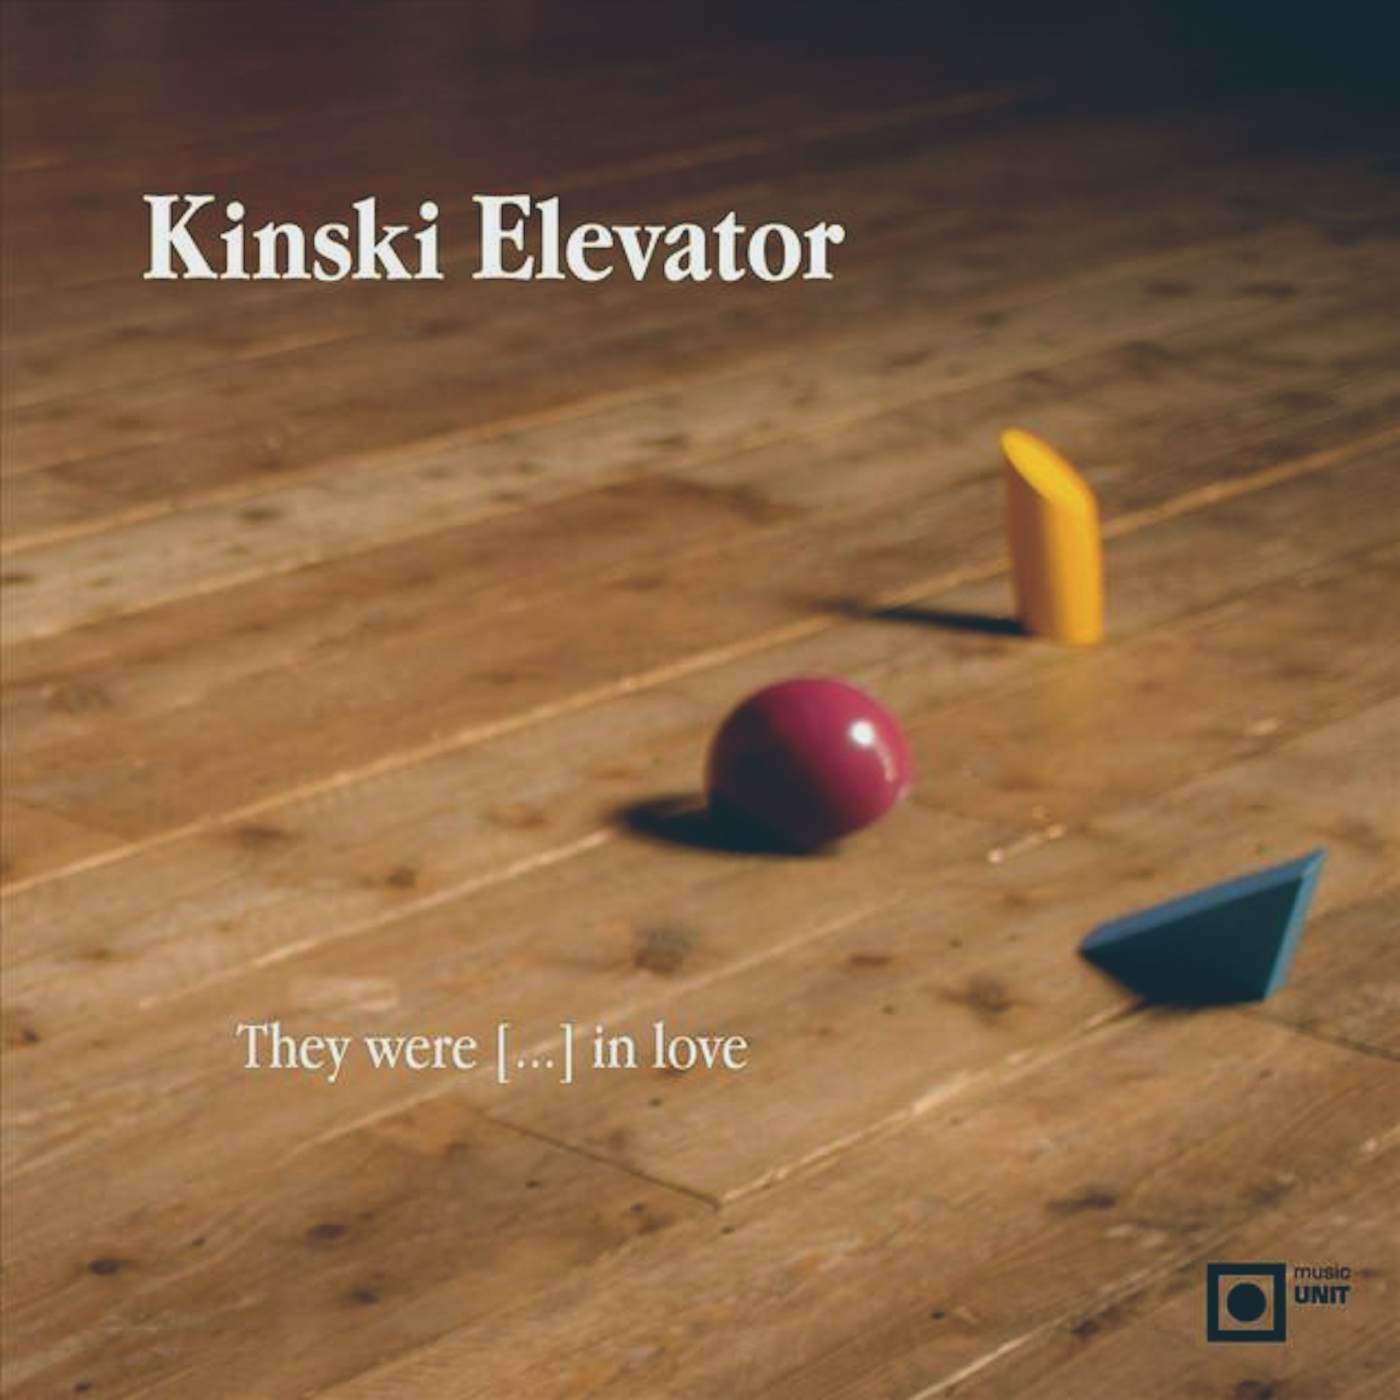 Kinski Elevator